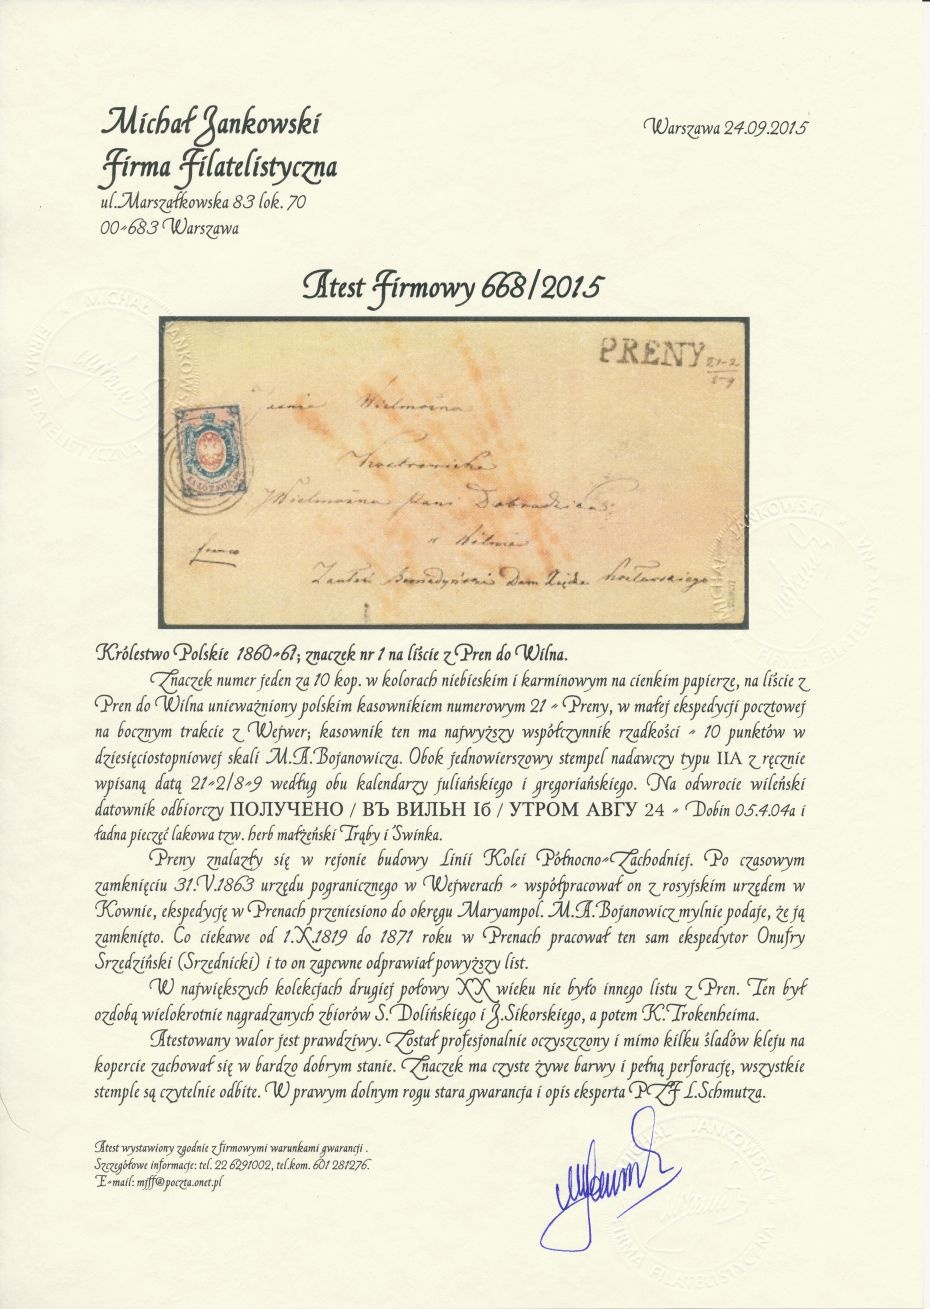 21 - Preny (277) 1b(u) atest (M.Jankowski) koperty listu do Wilna w Rosji, pkt.10B